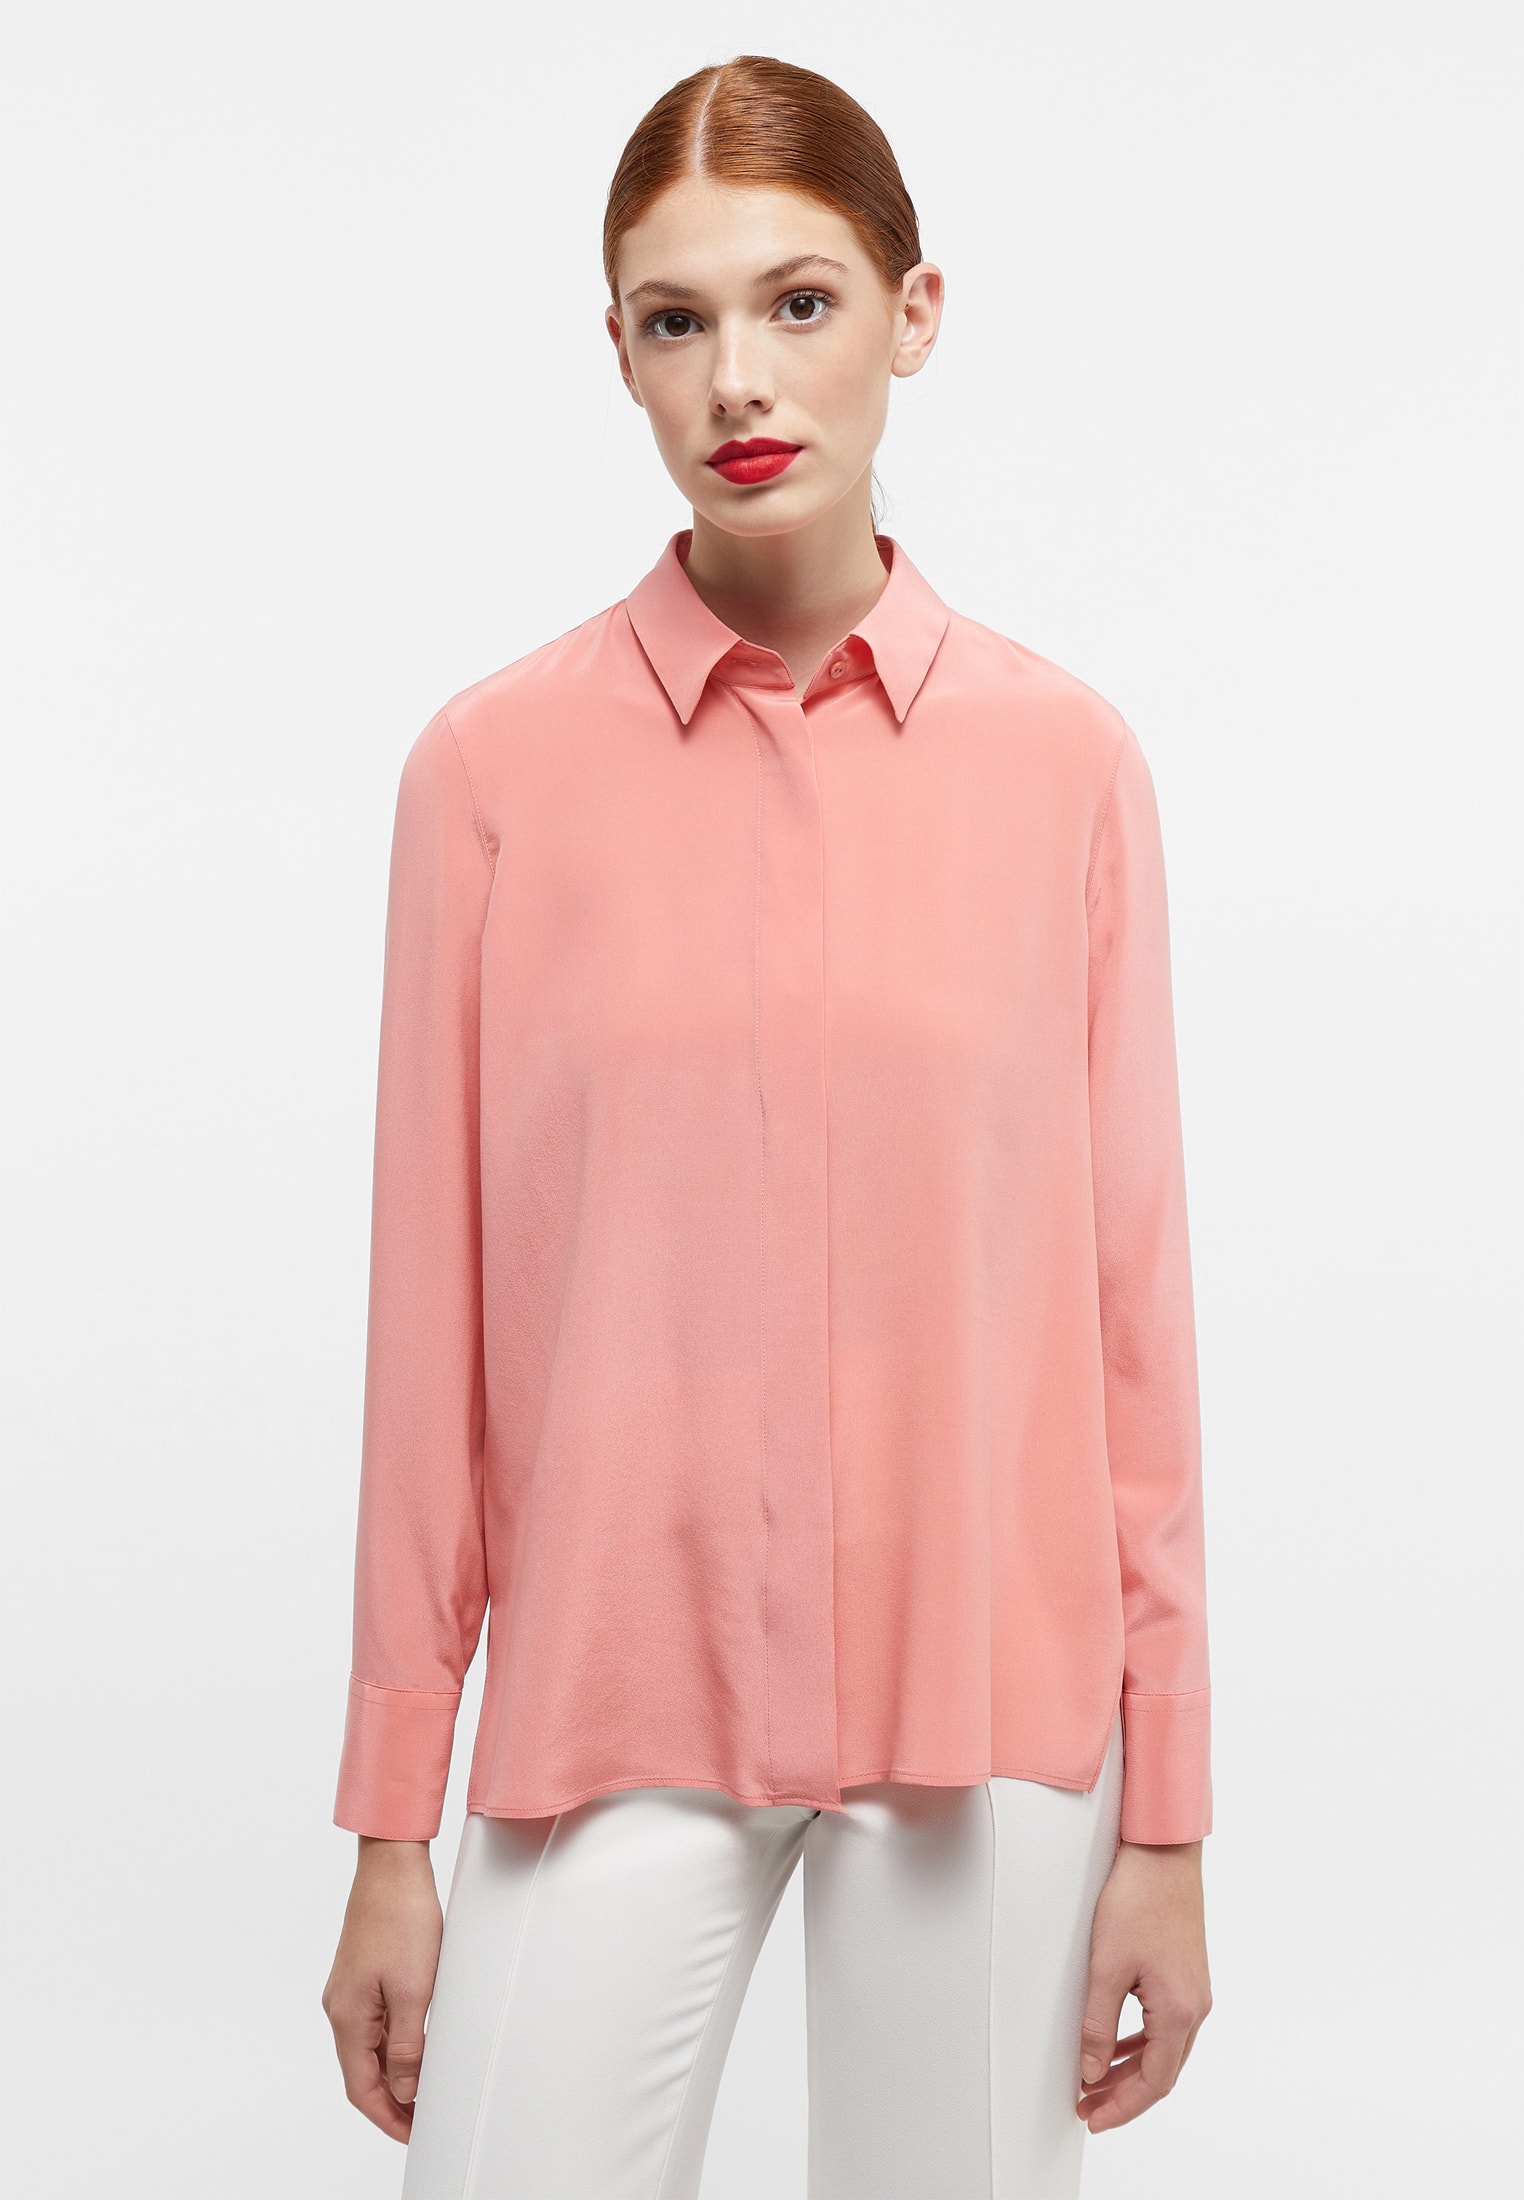 Uniqlo Womens Shirt Medium Peach Button Down Collar Long Sleeve